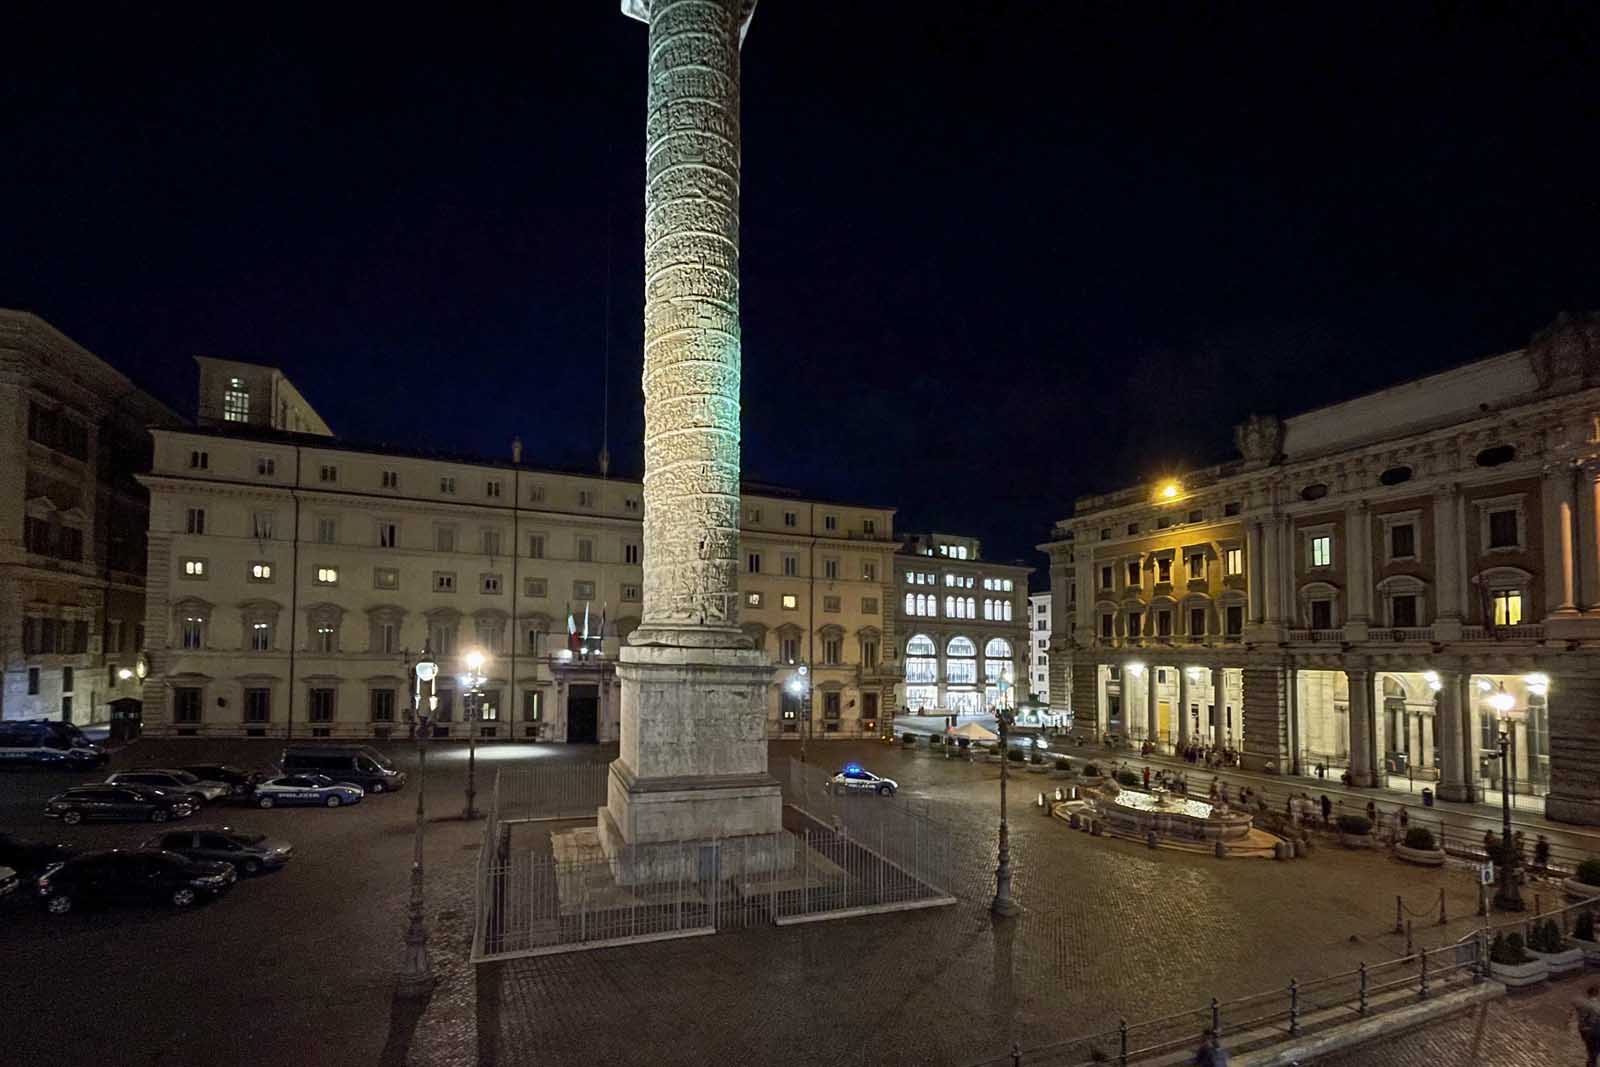 Colonna square